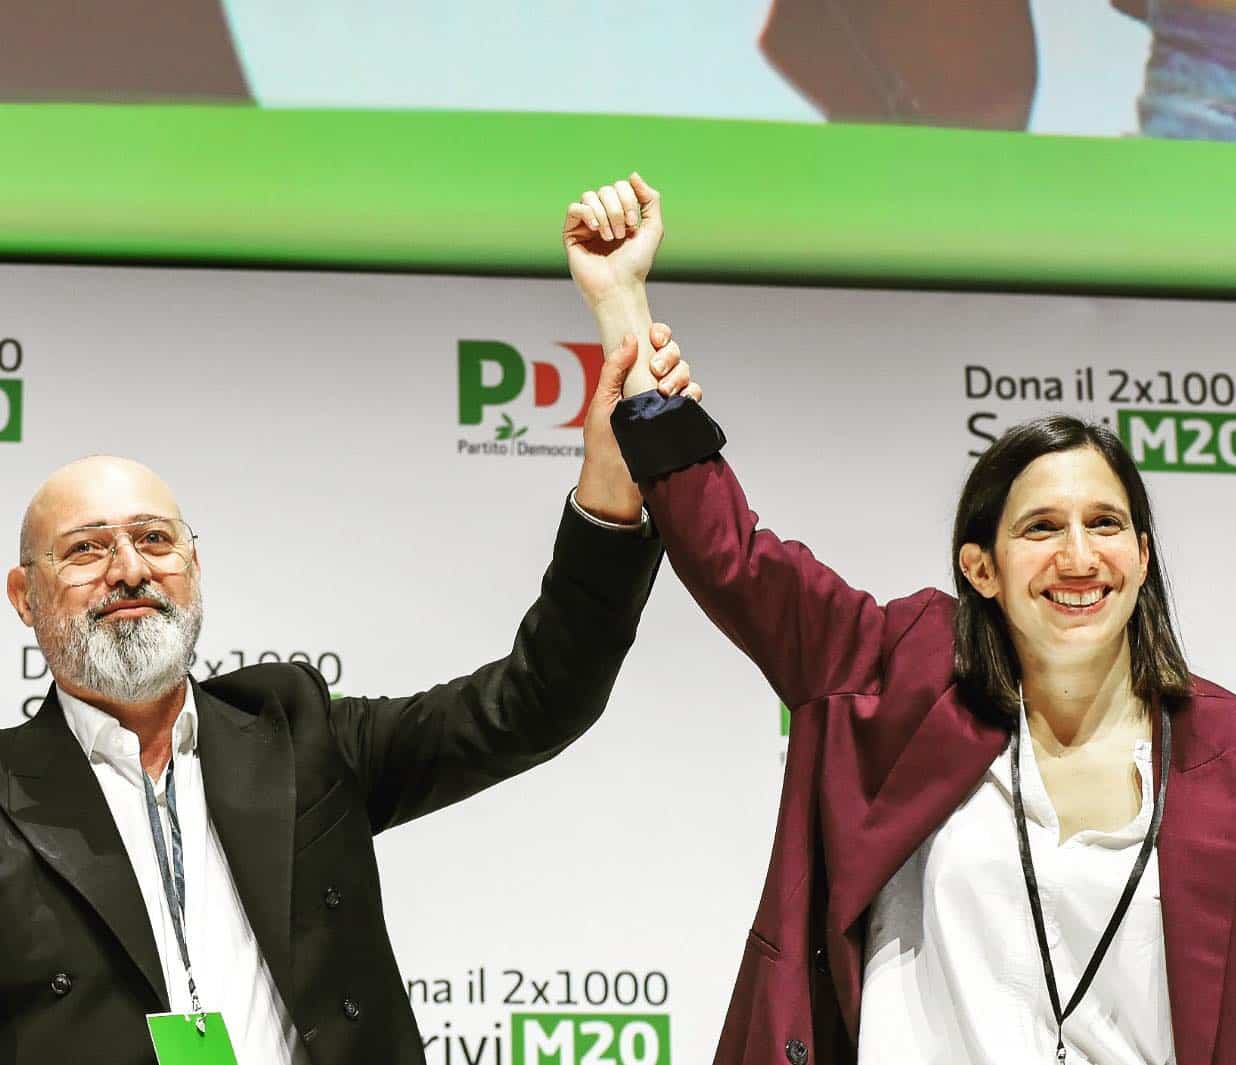 Sono dieci i siciliani eletti all’Assemblea nazionale del Pd: cominciata ufficialmente l’era Schlein